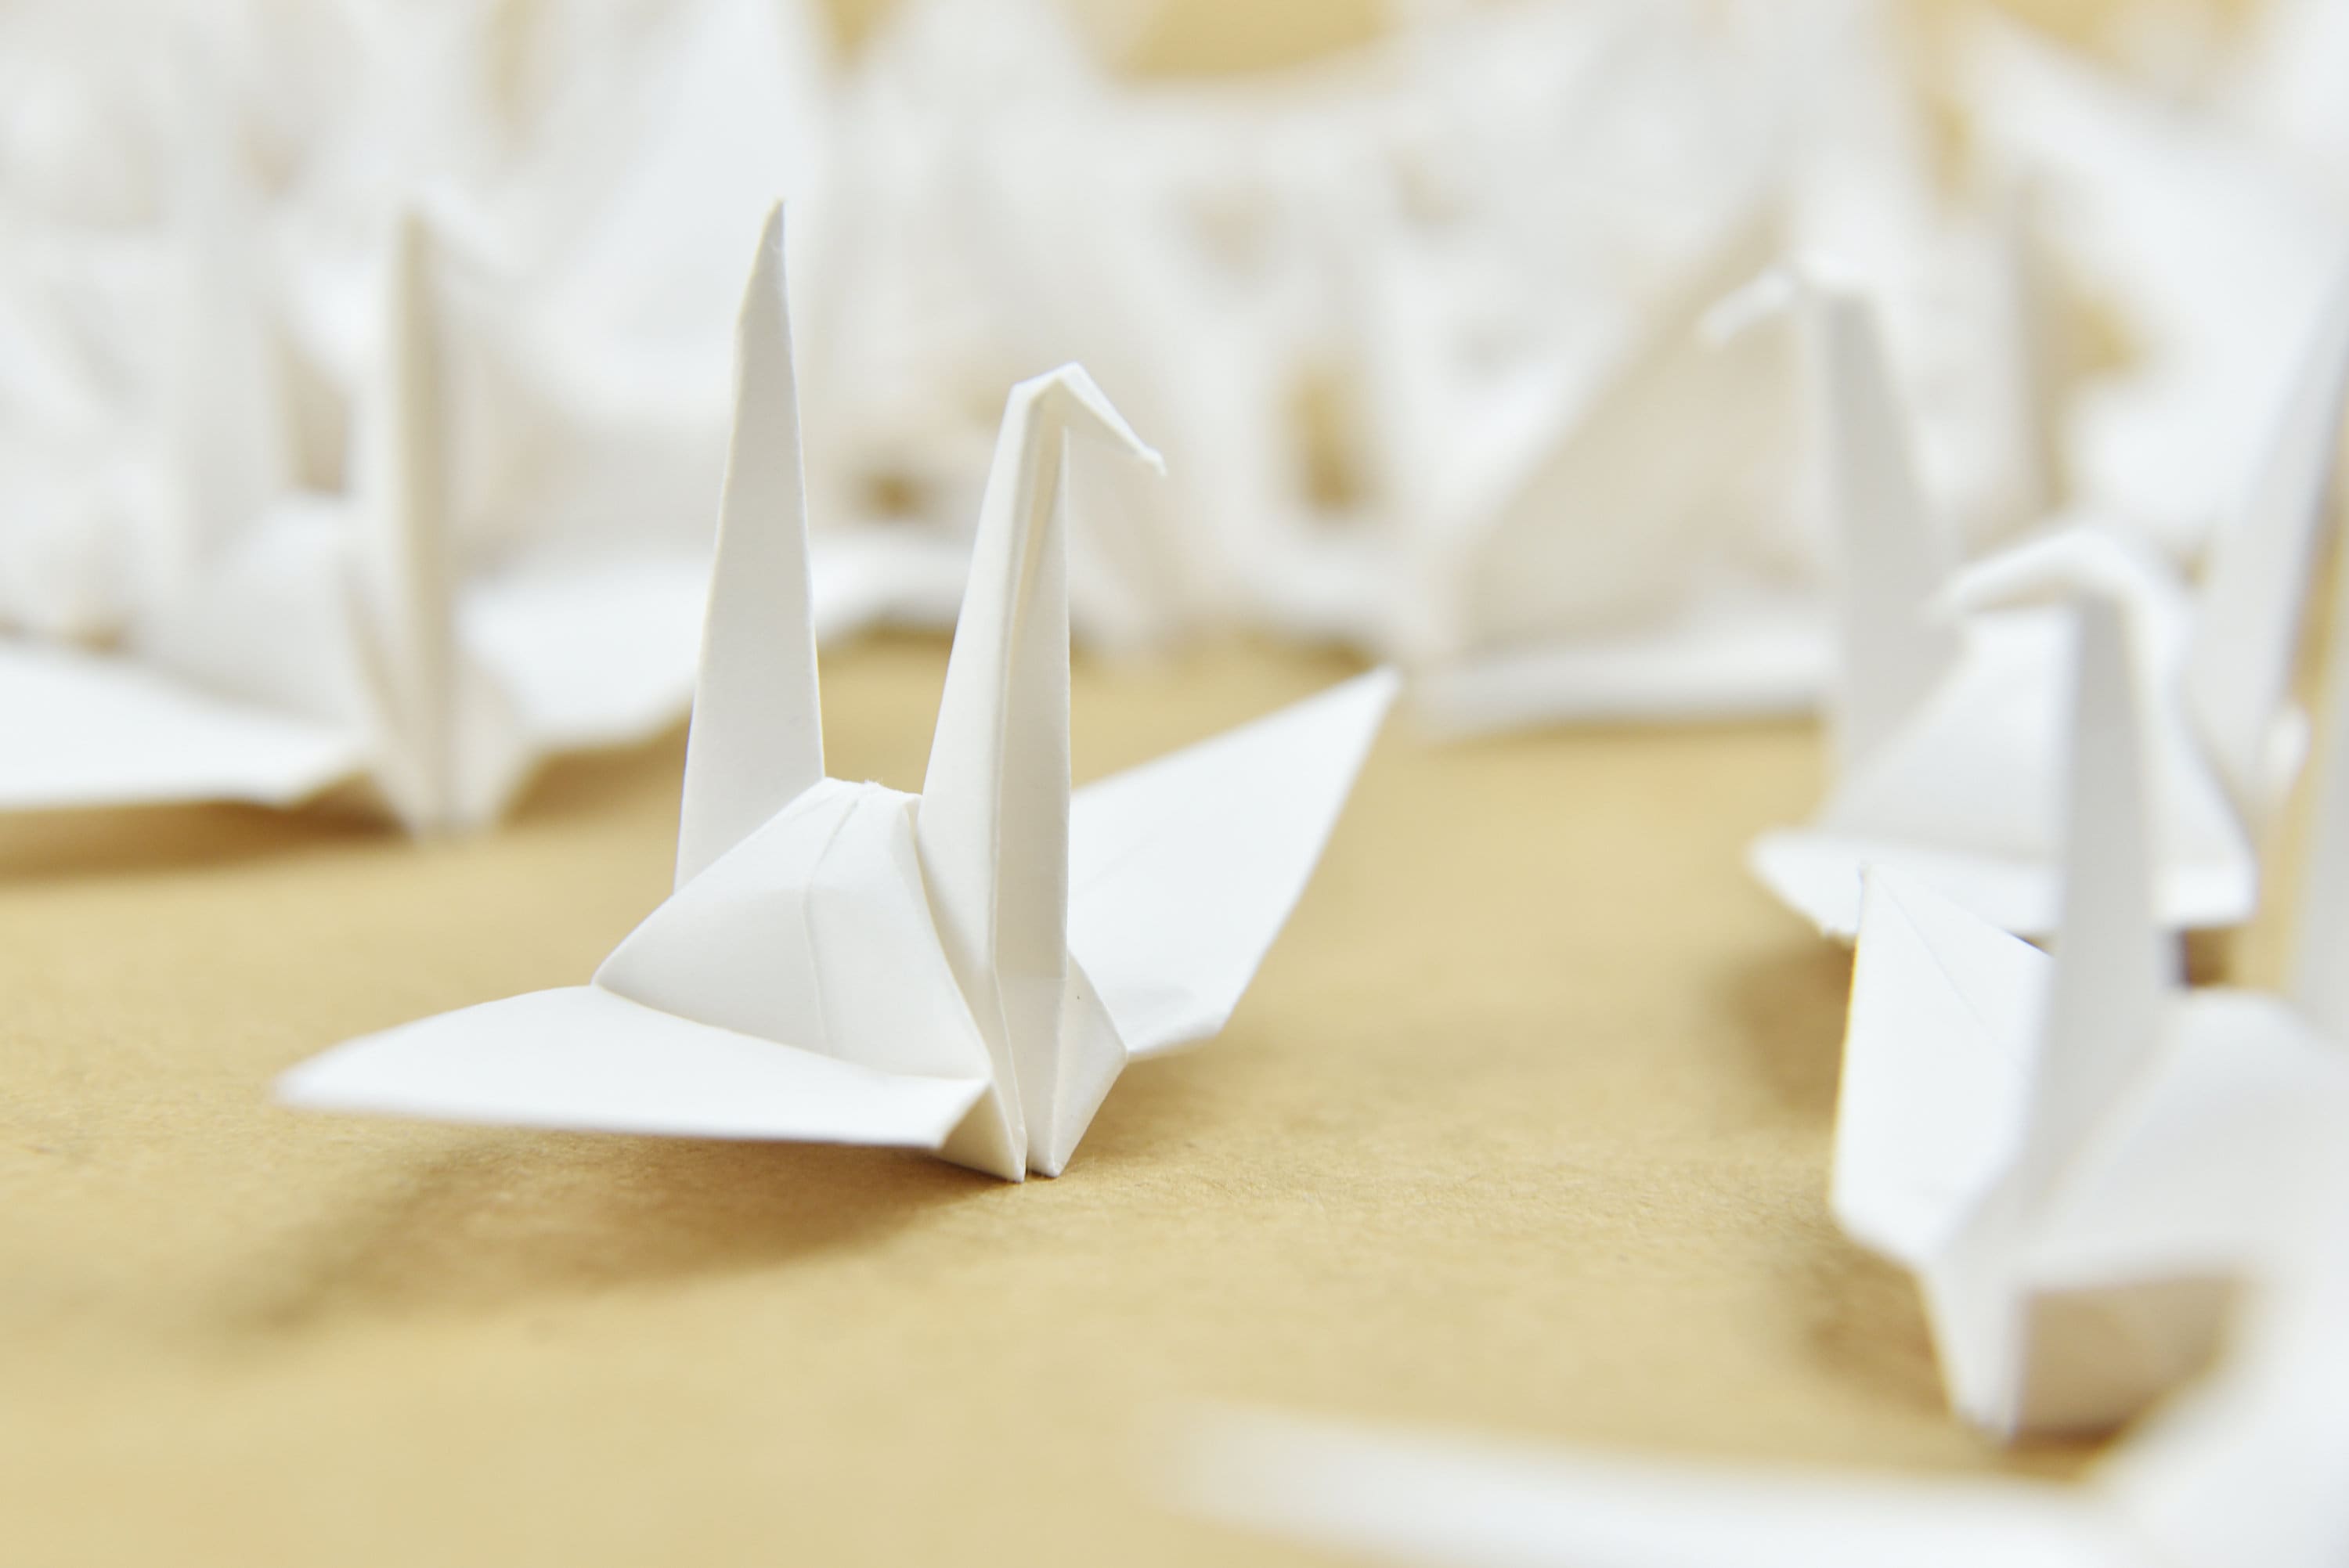 1000 gru di carta origami Avorio 3 pollici 7,5 cm gru origami - Origamipolly - Prefabbricate per la decorazione giapponese del matrimonio di Natale